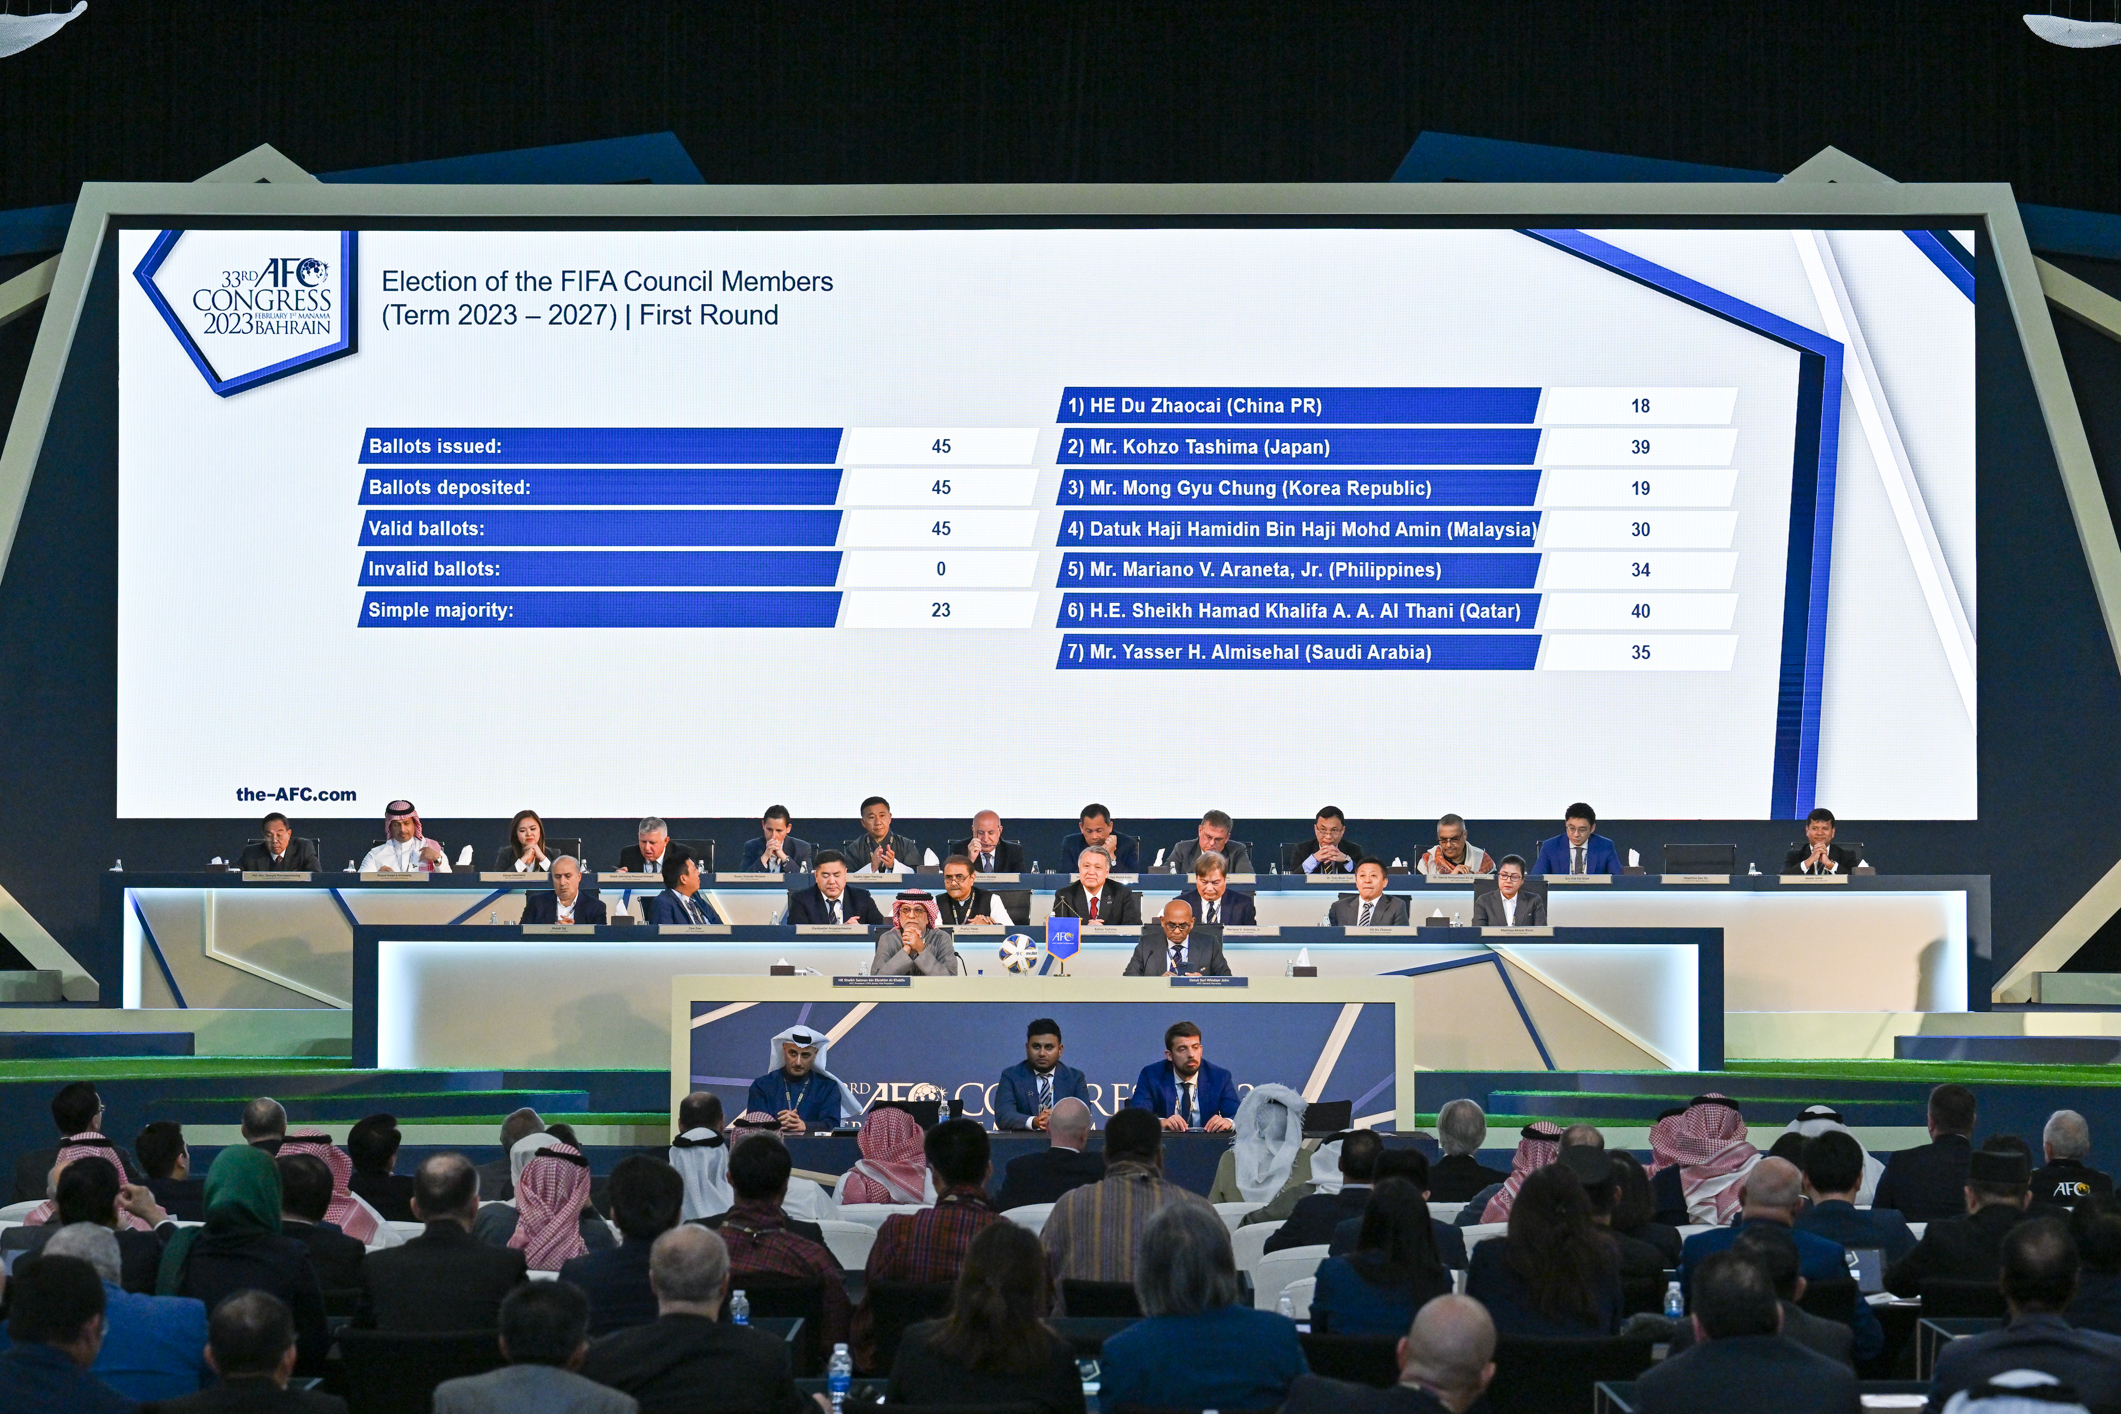 Mariano Araneta re-elected into the FIFA Council